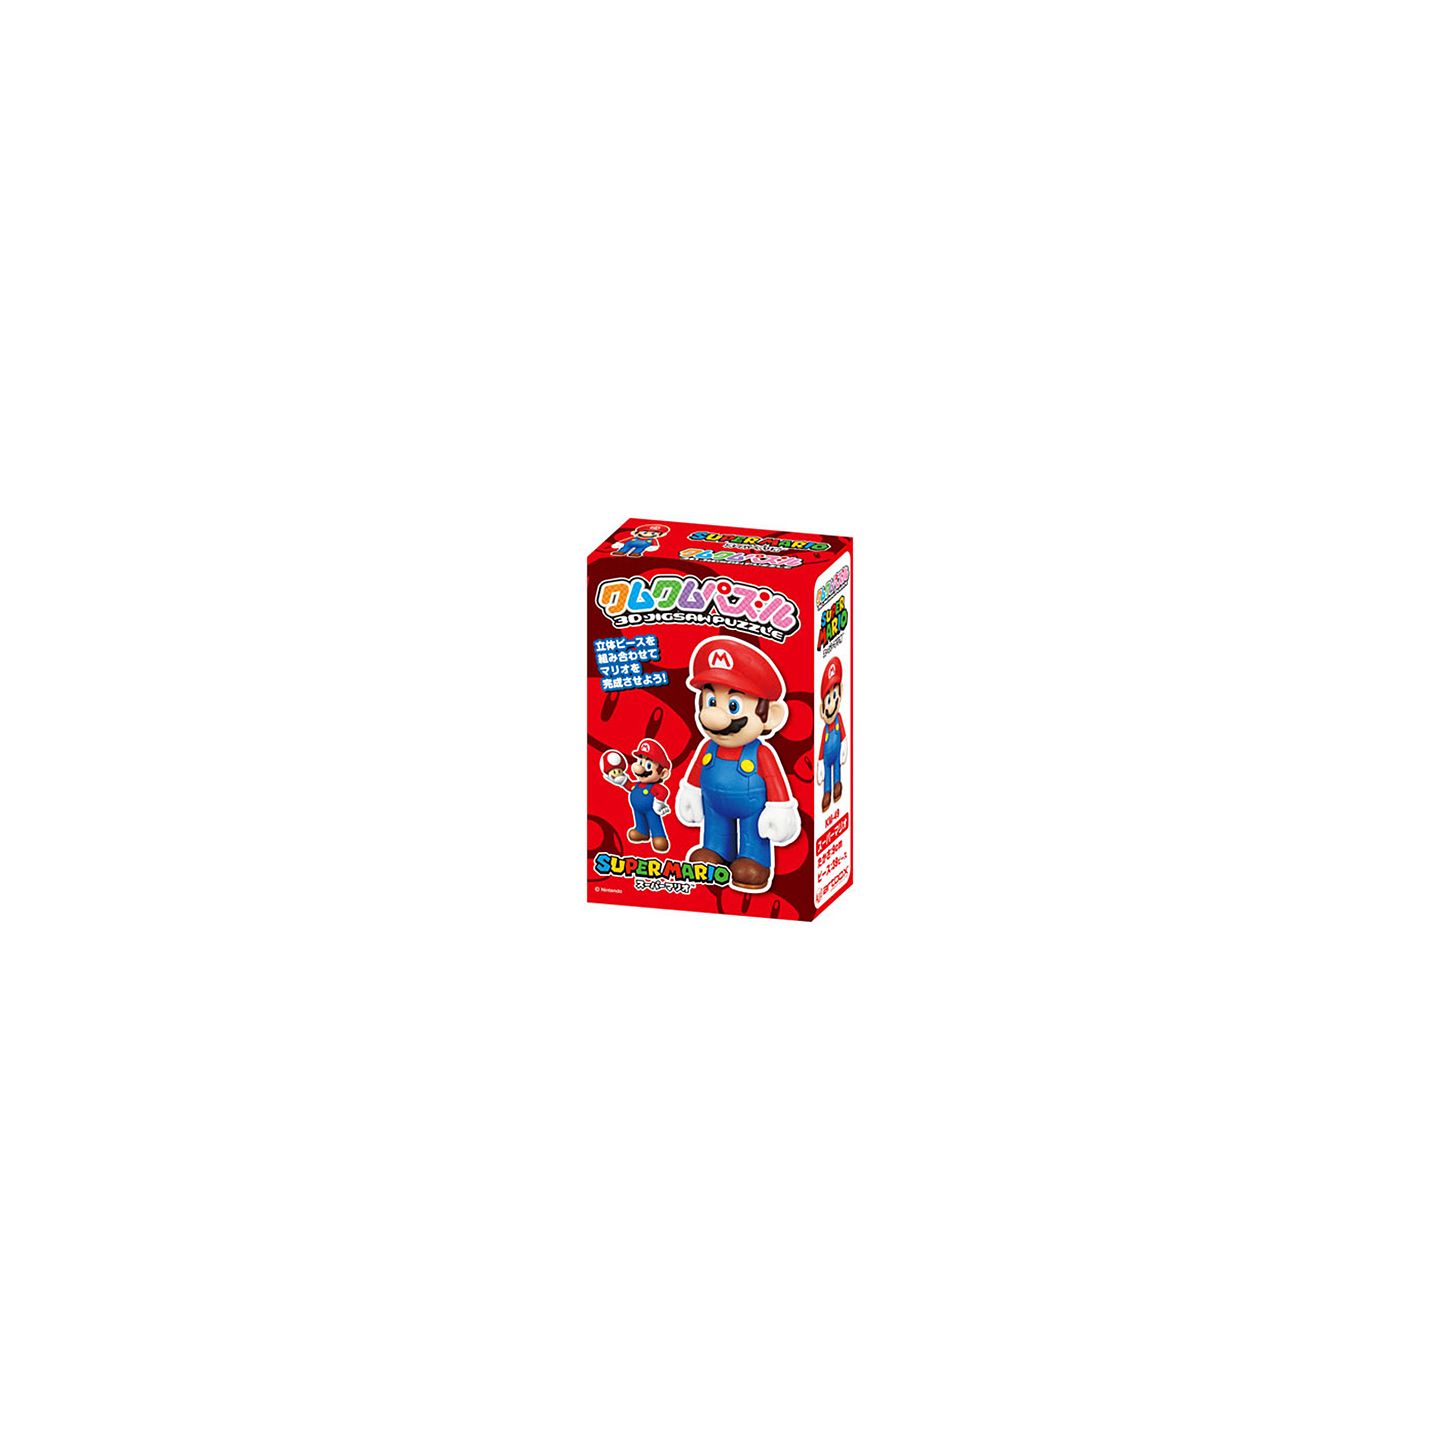 Ensky KM-49 3D Jigsaw Puzzle Super Mario (39 Pieces)